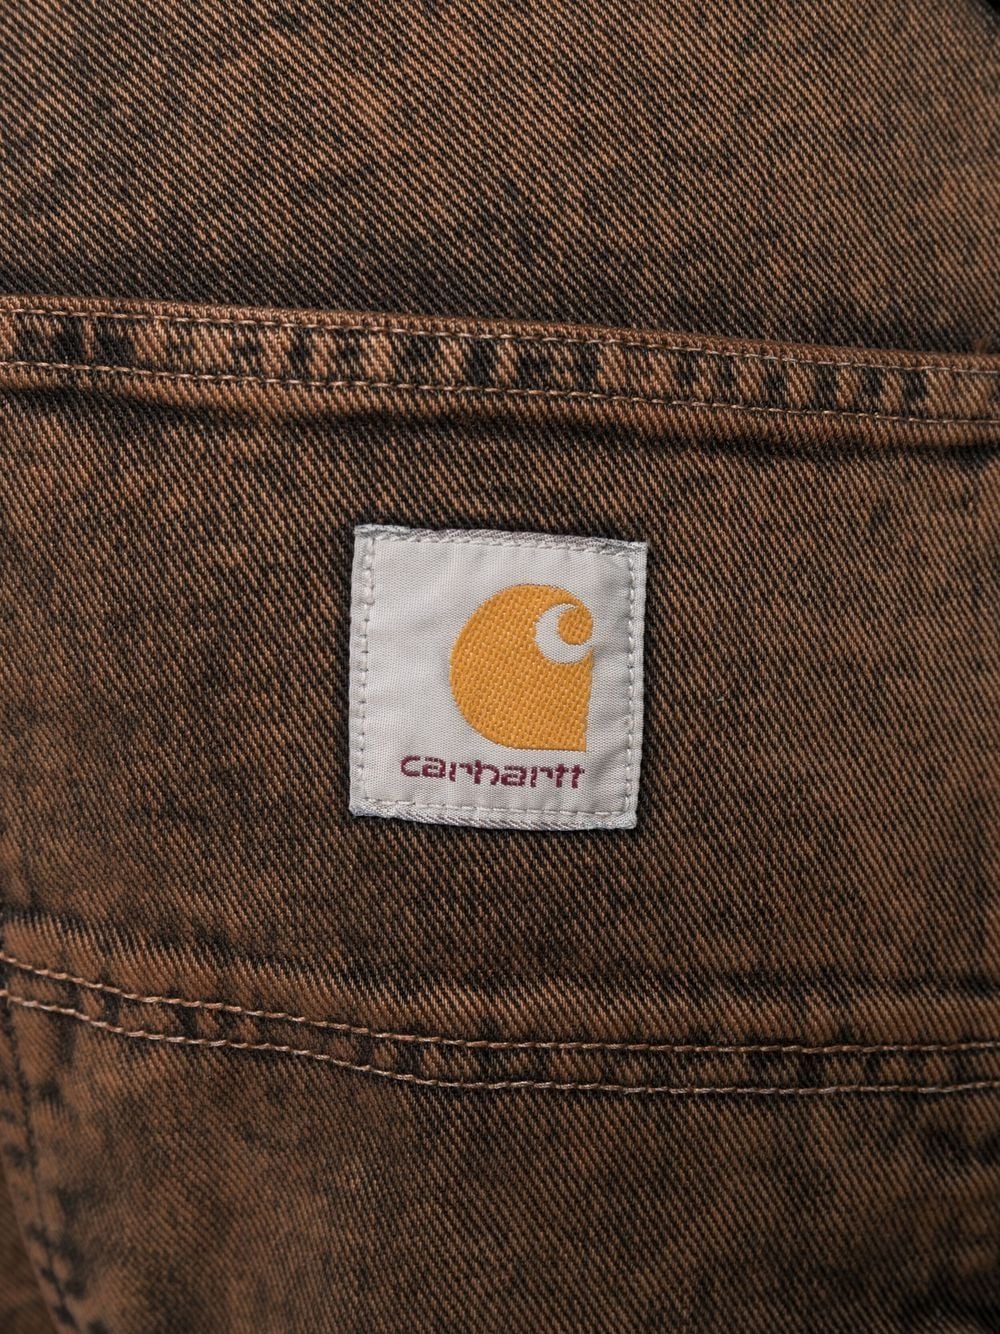 фото Carhartt wip джинсовые шорты